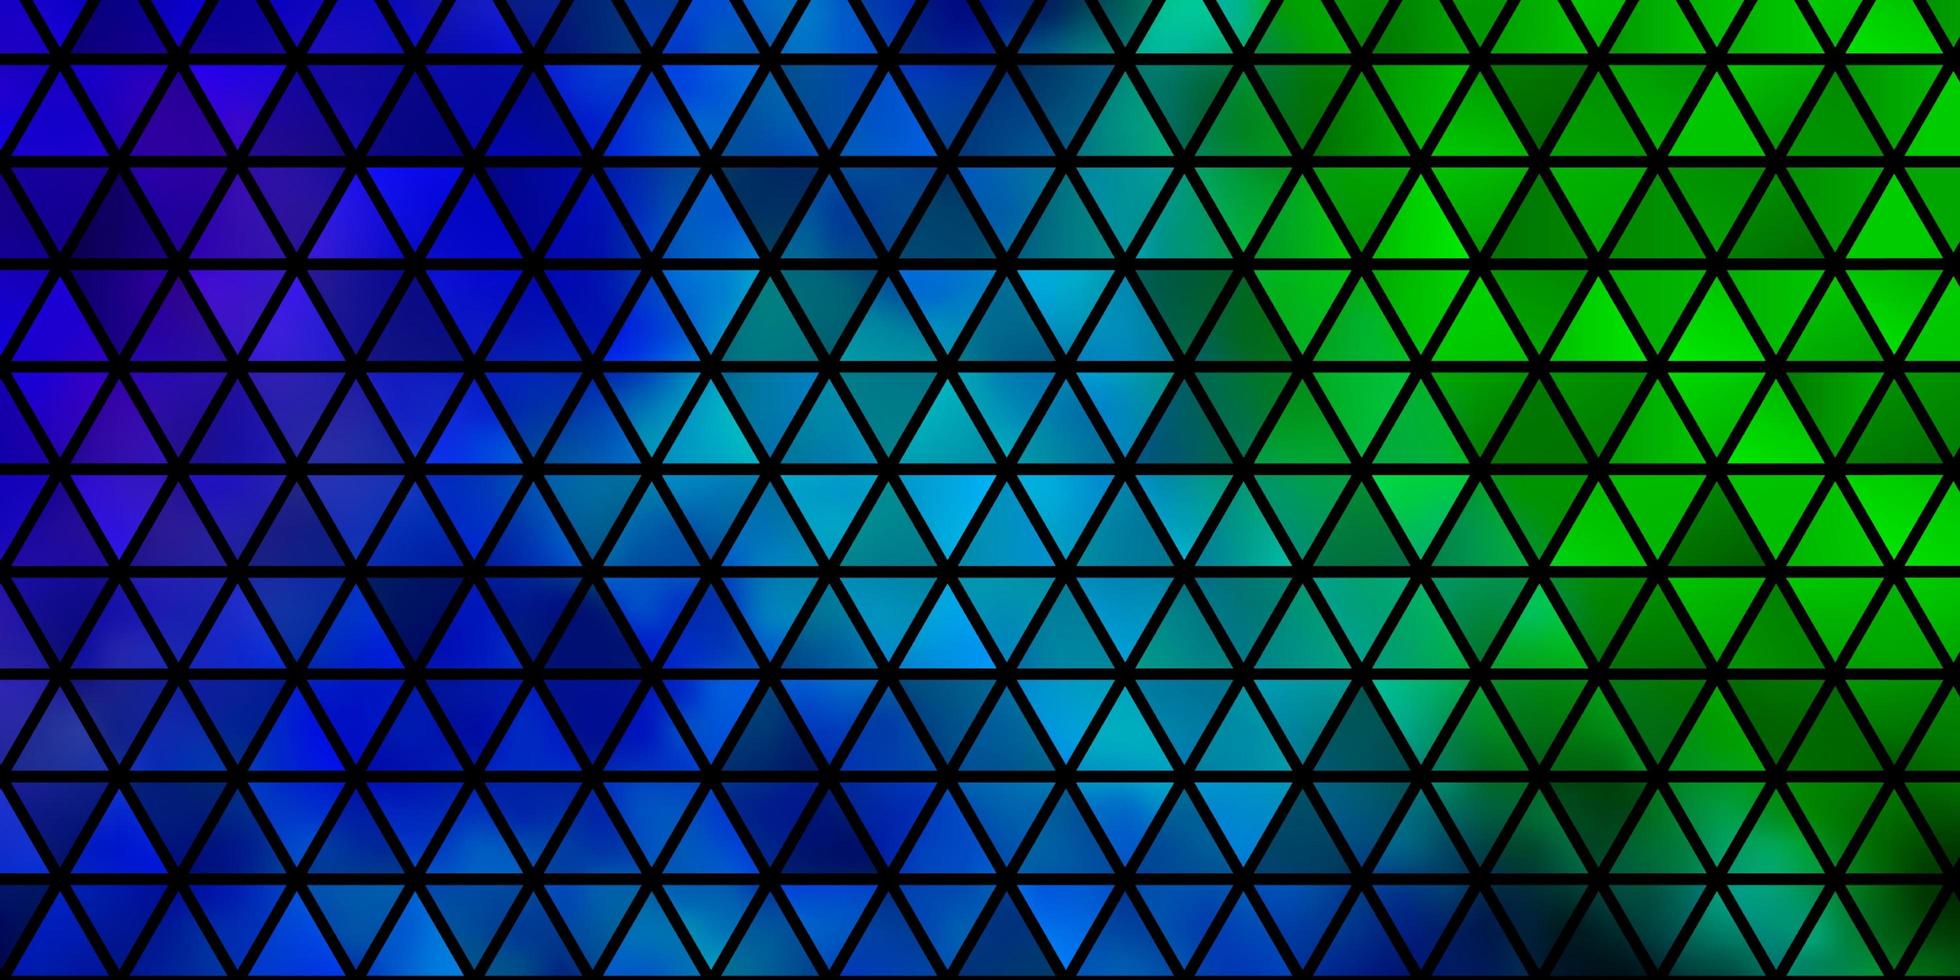 sfondo vettoriale azzurro, verde con stile poligonale.